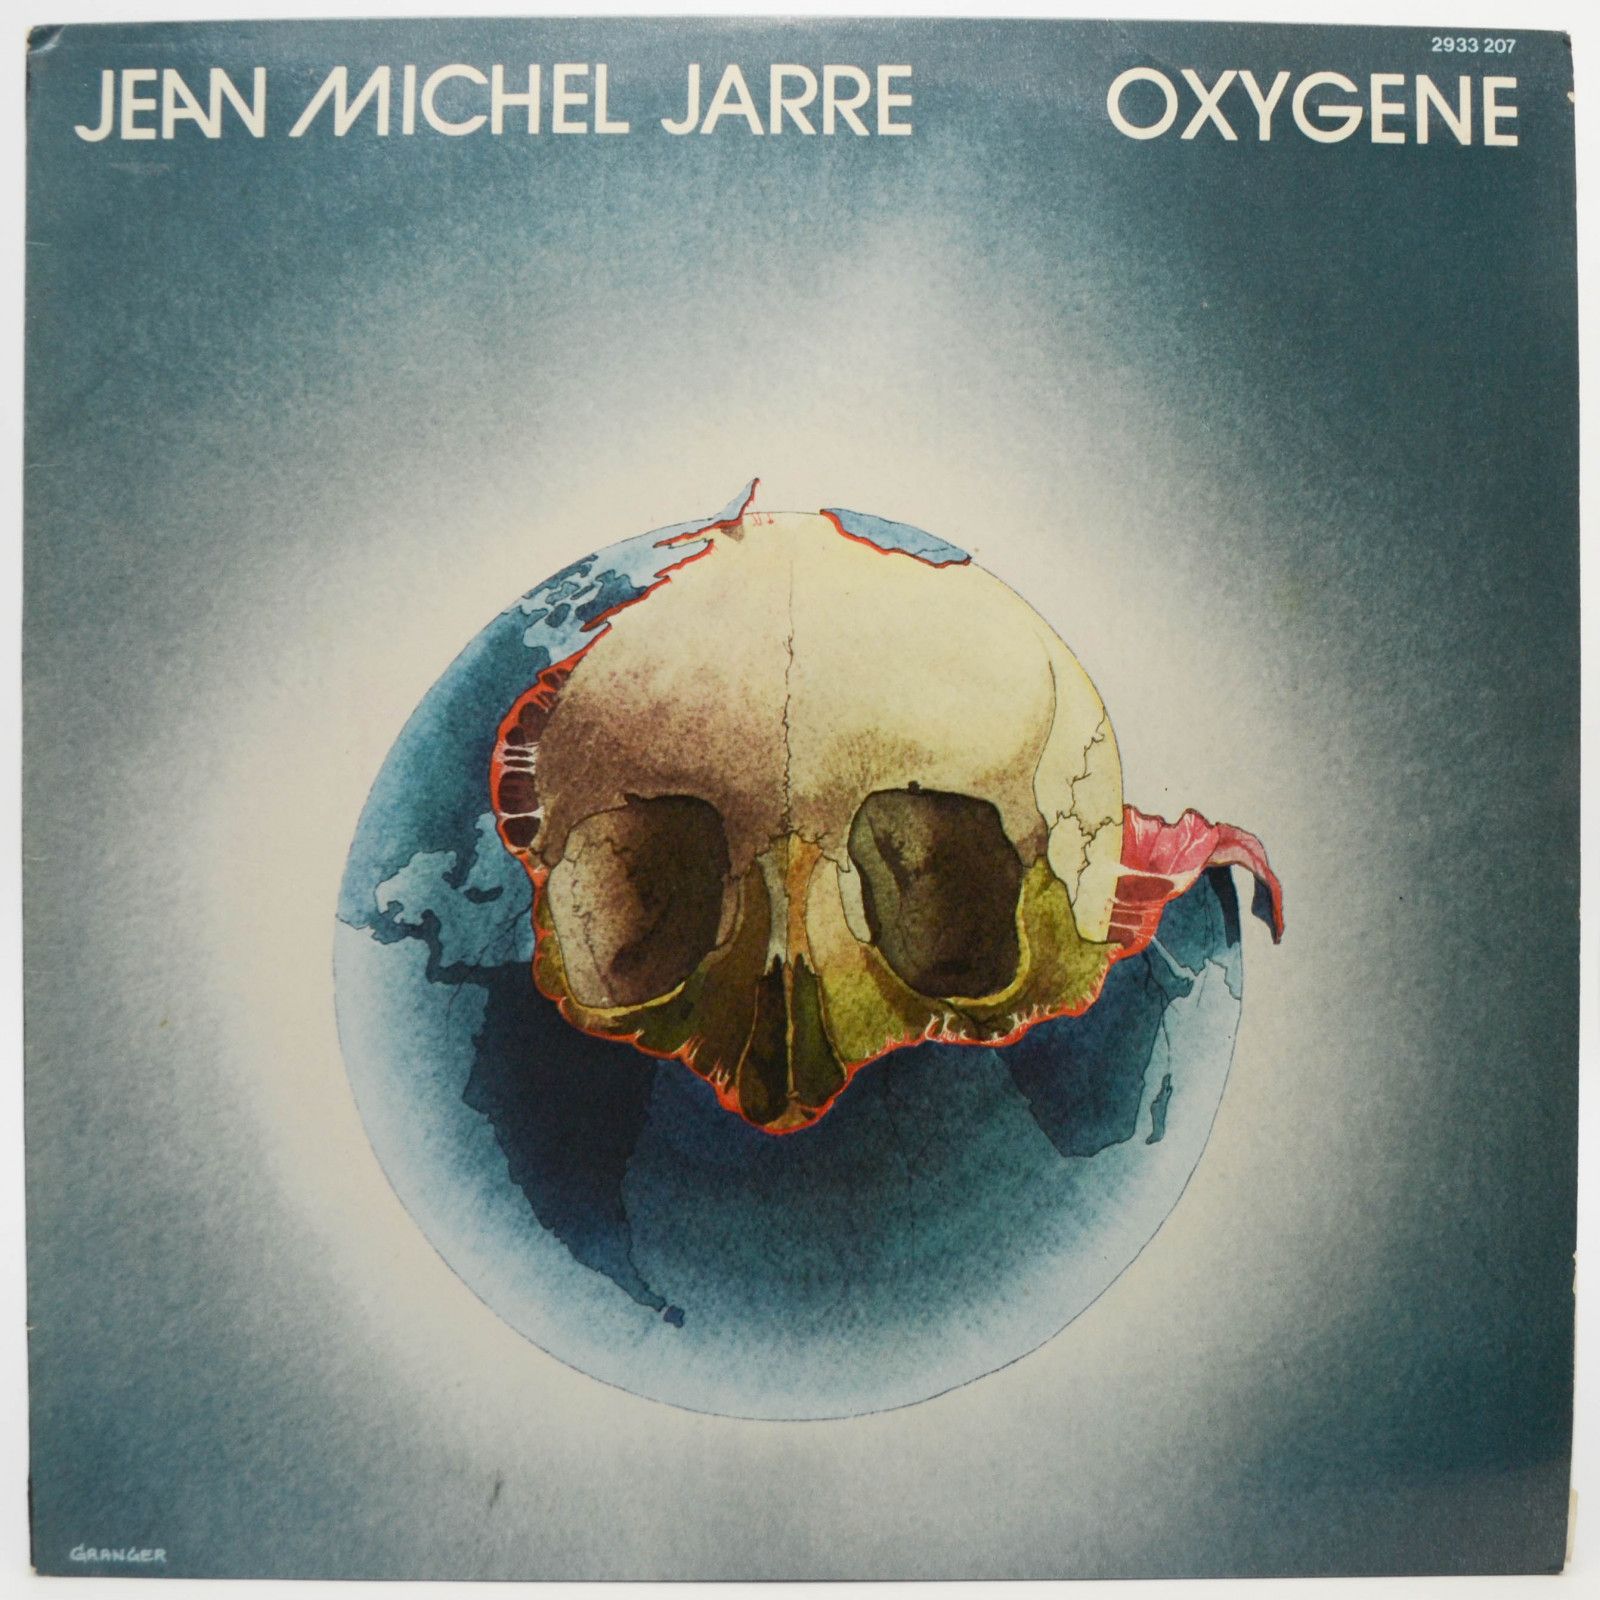 Jean Michel Jarre — Oxygene (France), 1976